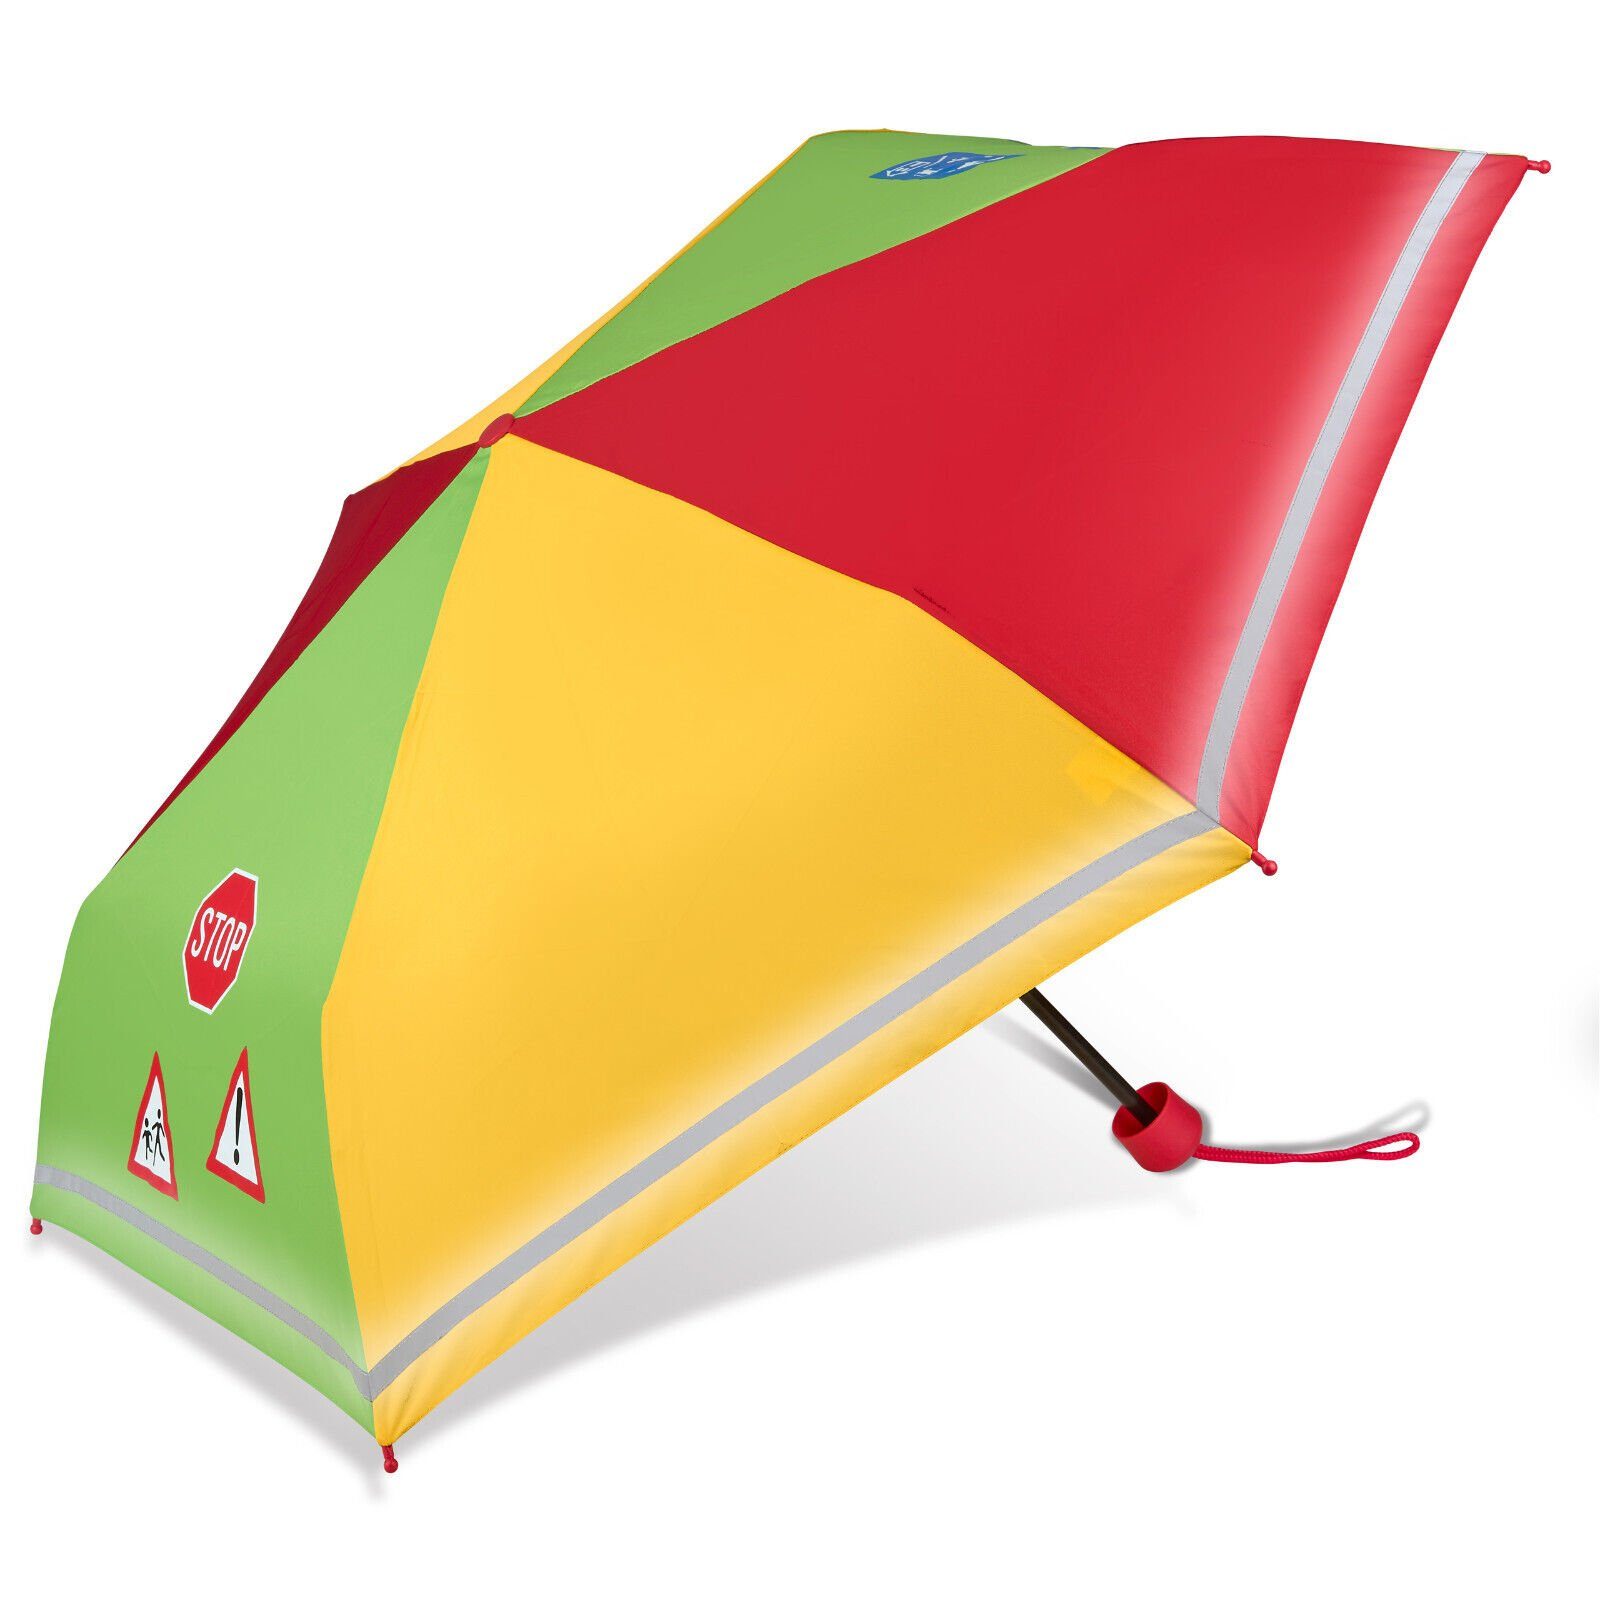 Dr. Neuser Taschenregenschirm, speziell für Kinder, reflektierend, leicht, kompakt, stabil